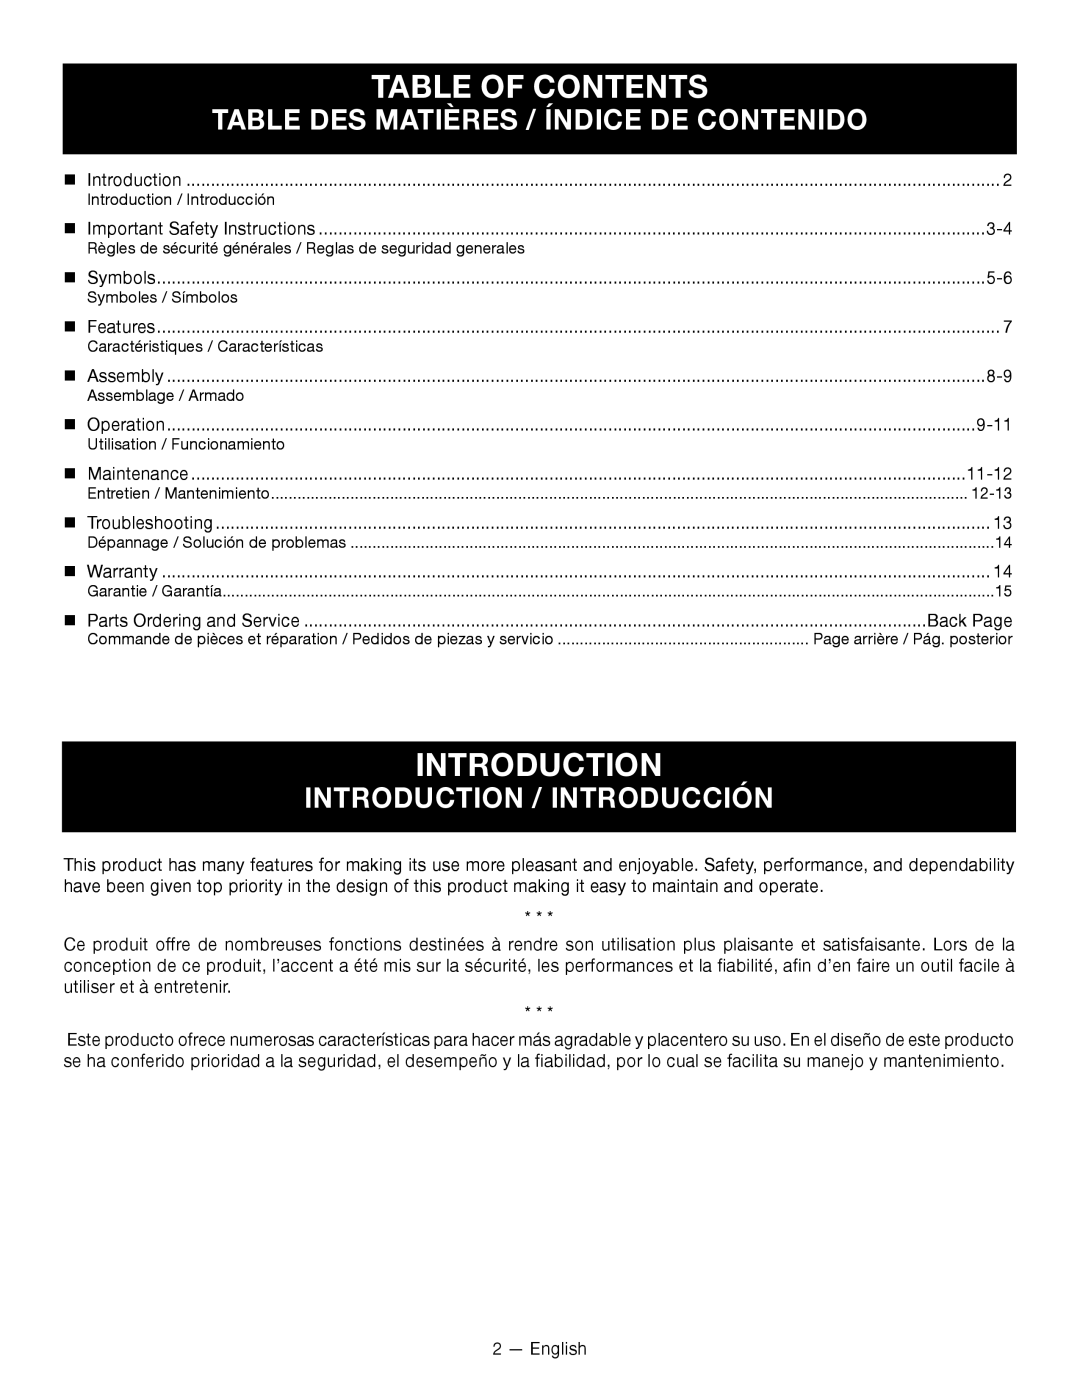 Ryobi RY14110 Table Of Contents, Table Des Matières / Índice De Contenido, Introduction / Introducción 